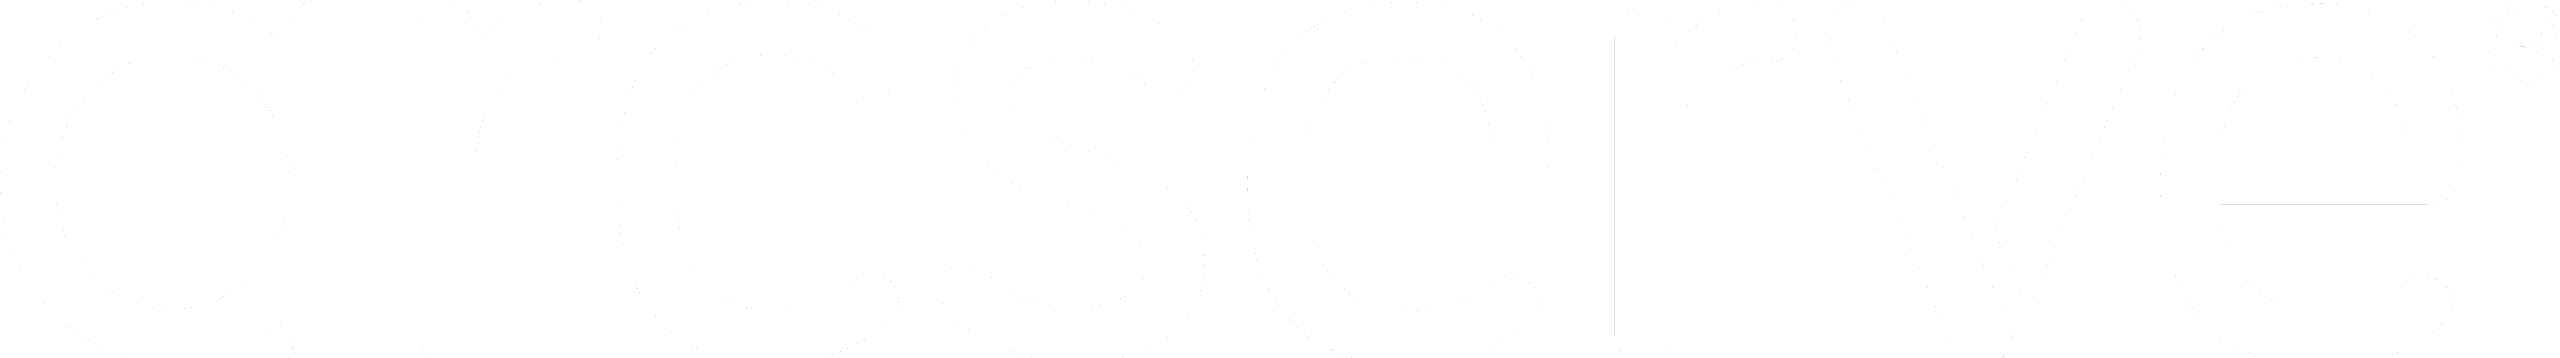 arcserve_logo